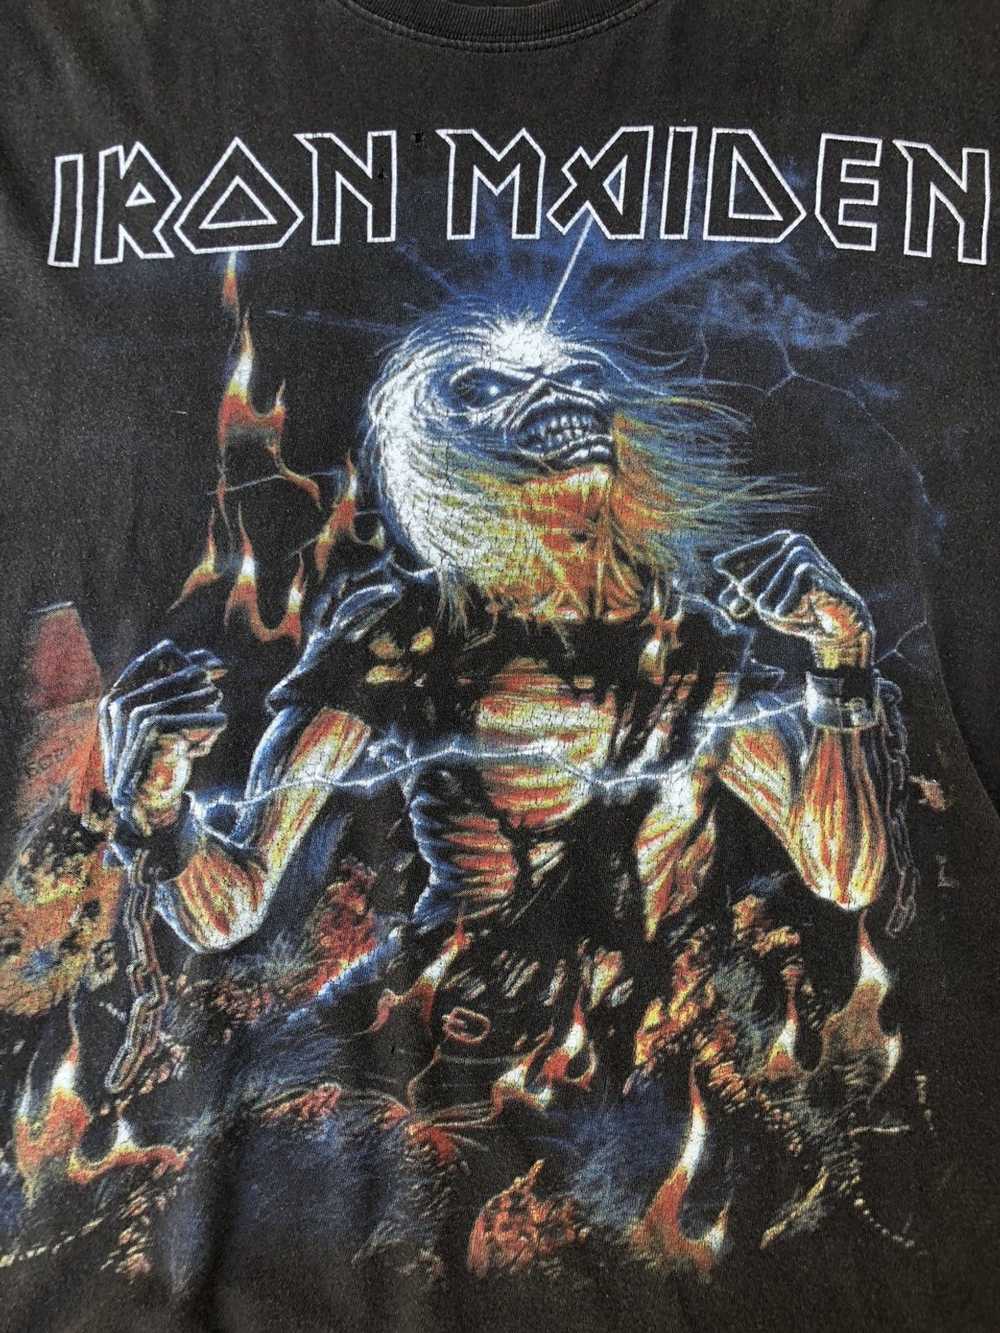 Iron Maiden × Vintage Vintage Iron Maiden Tee - image 2